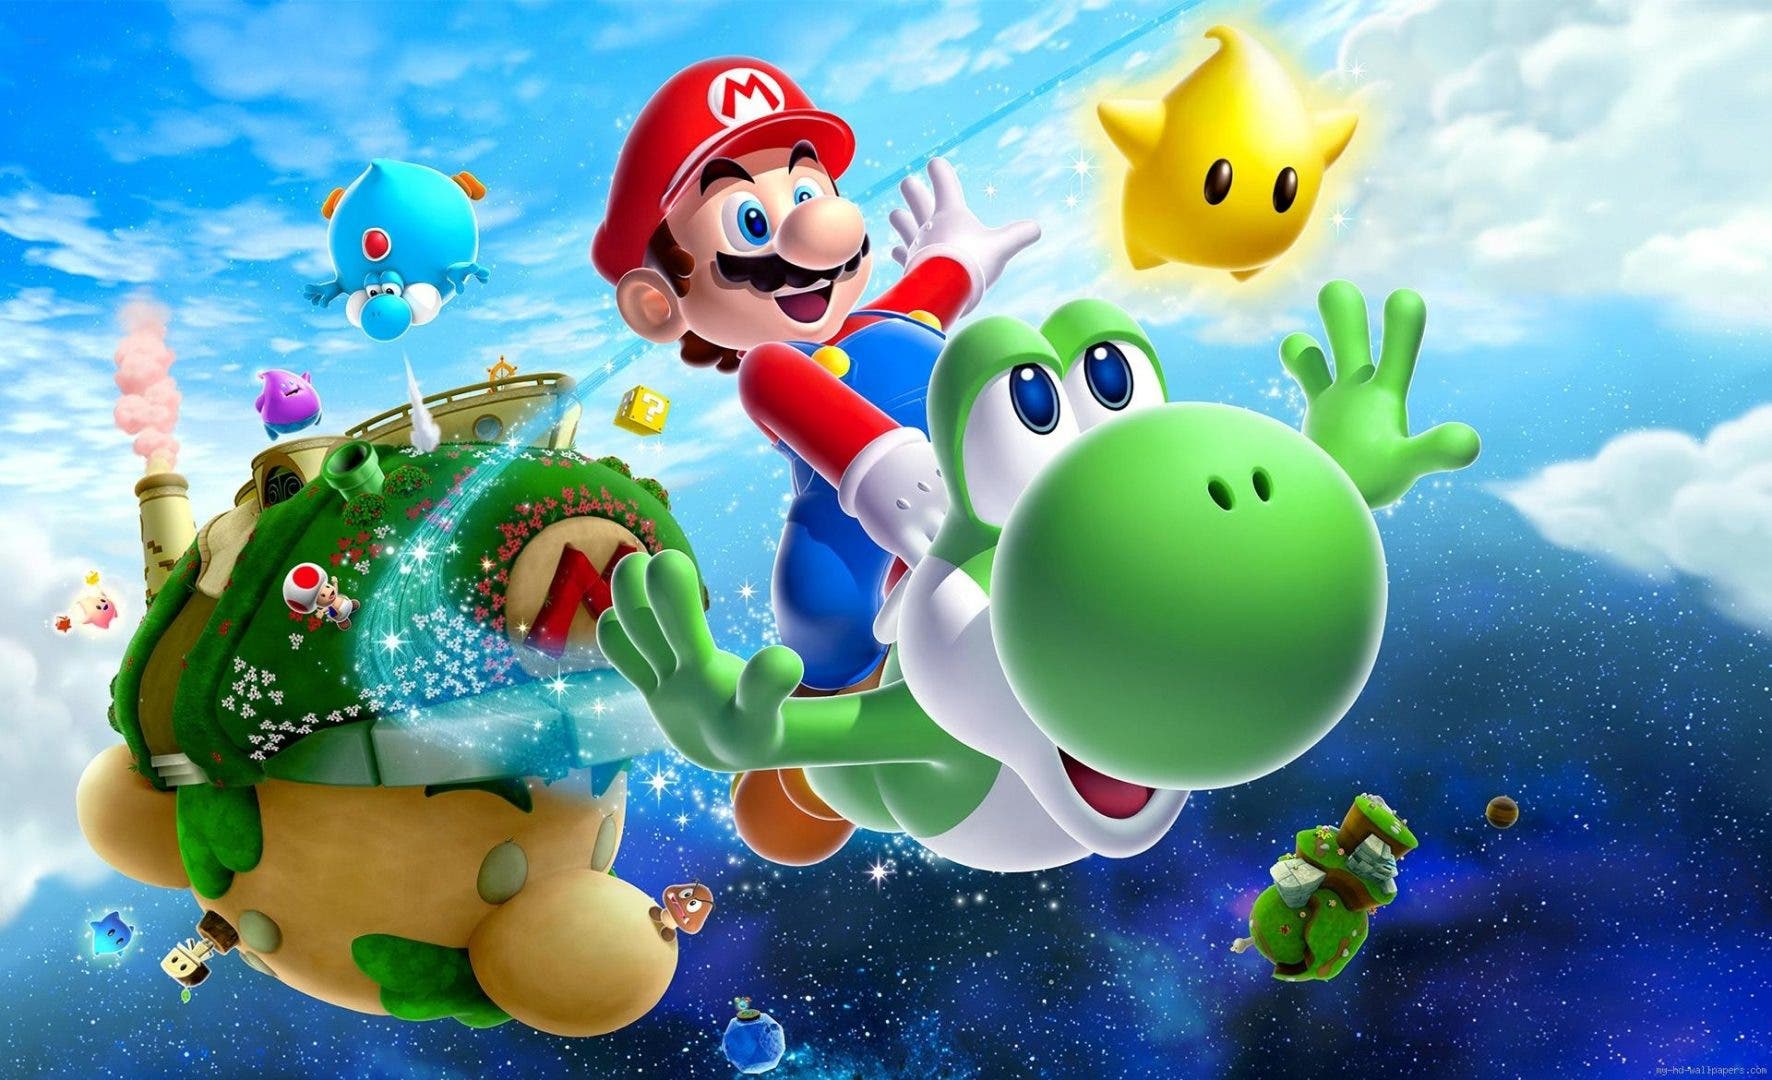 Nintendo confirma que Mario golpeaba a Yoshi para que sacara la lengua